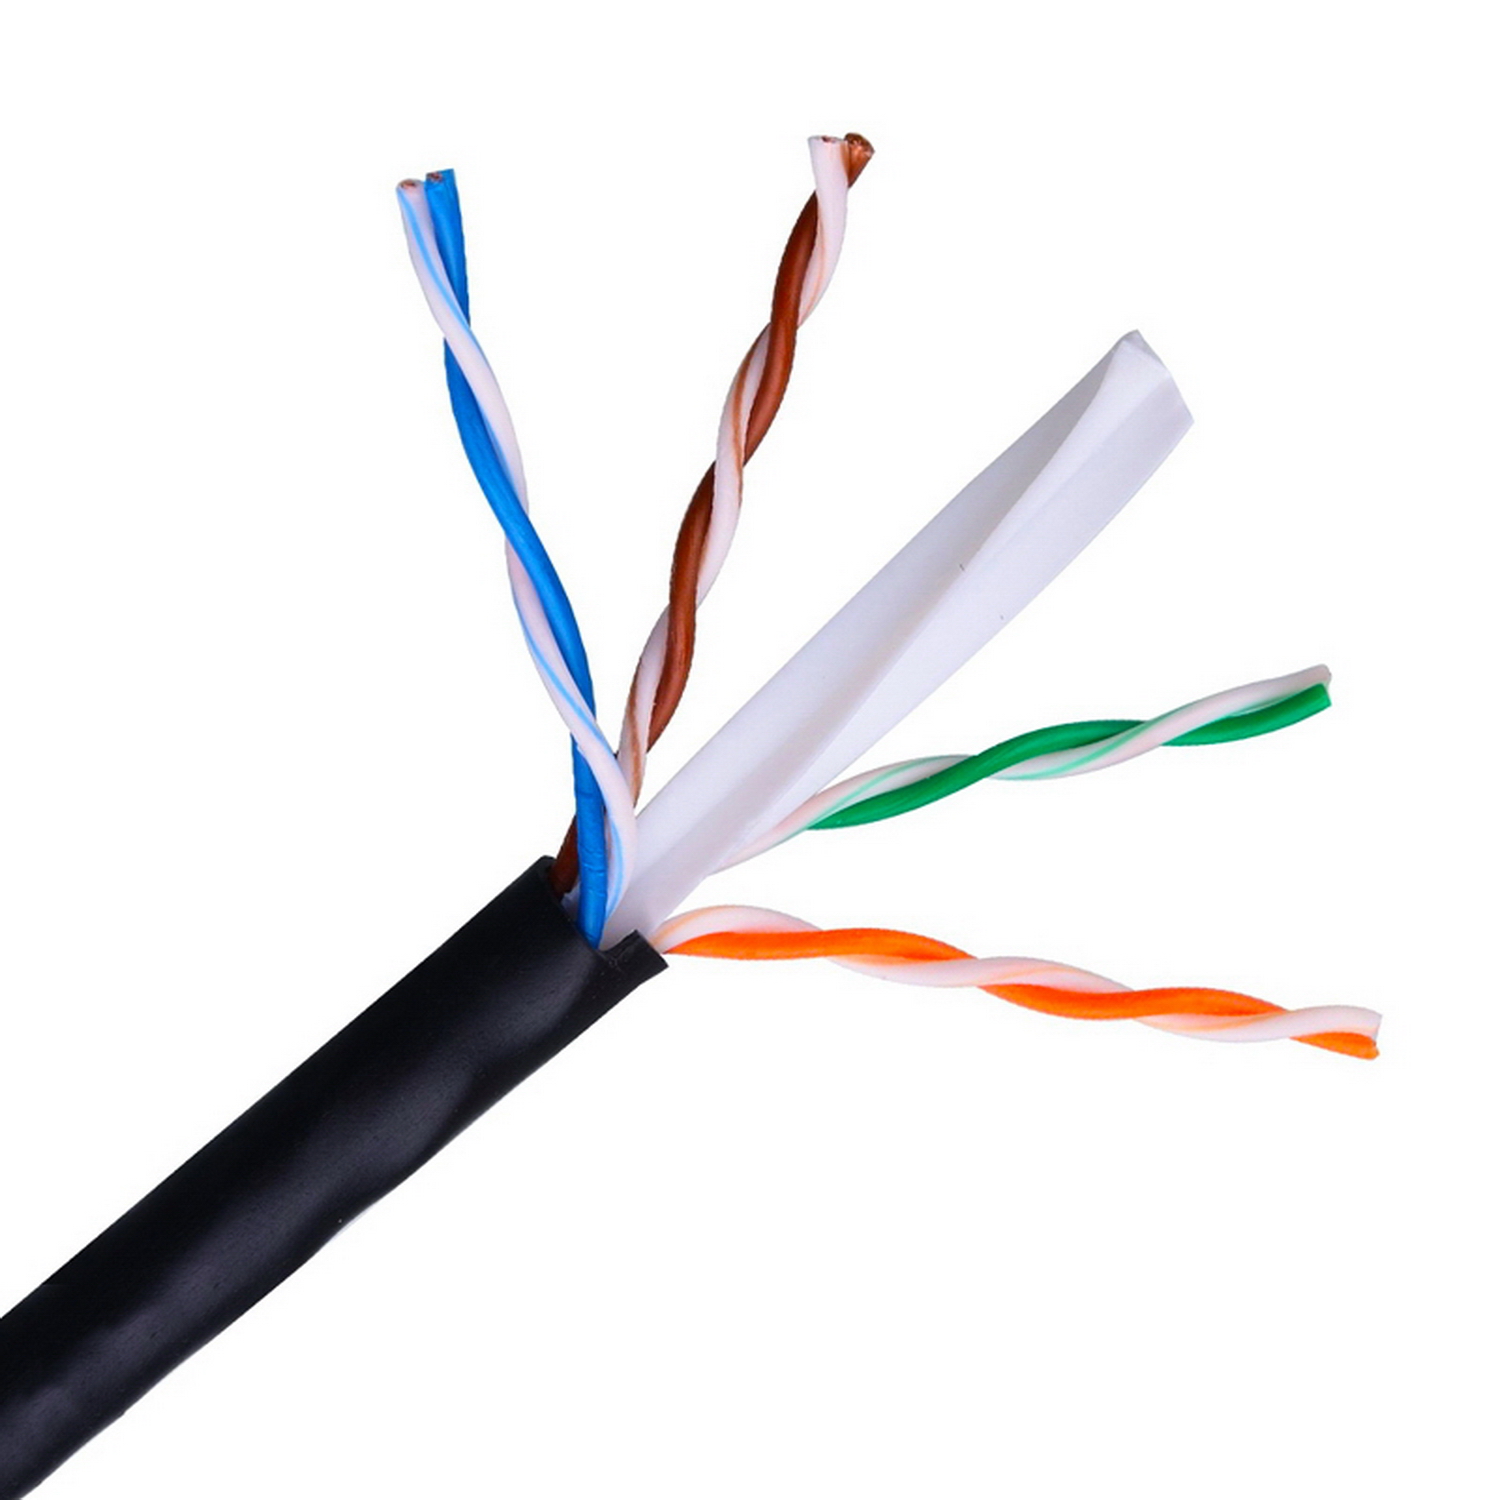 Aisens Cable de Red Exterior Impermeable RJ45 Cat.6 UTP Rigido AWG24 - Bobina de 100m 100% Cobre para la Instalacion - Resistente a Rayos Ultravioleta - Color Negro